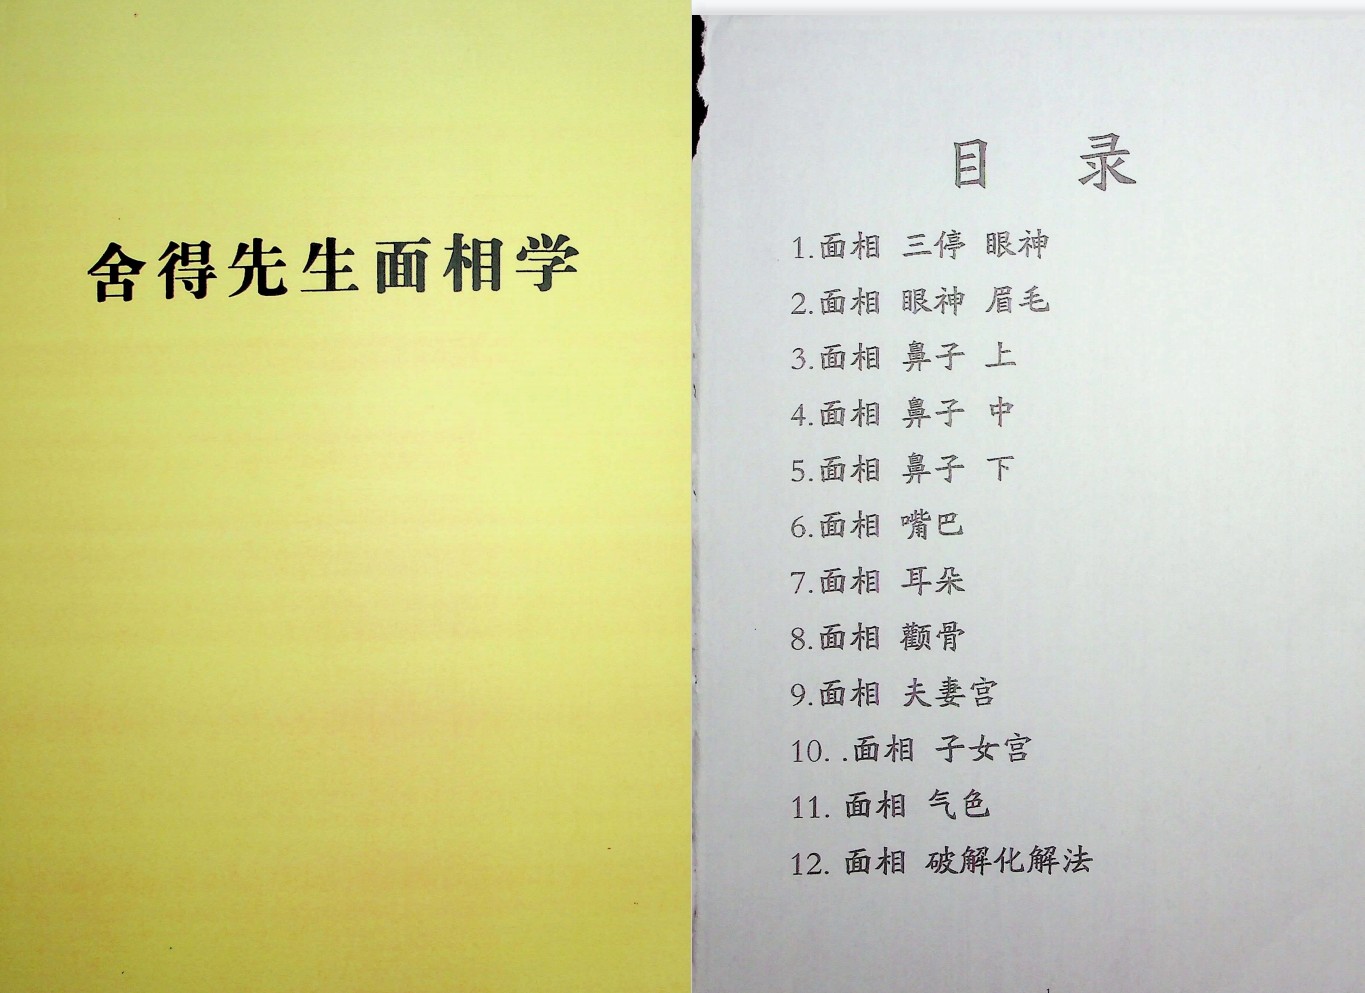 《舍得先生面相学》[无水印].pdf「百度网盘下载」PDF 电子书插图